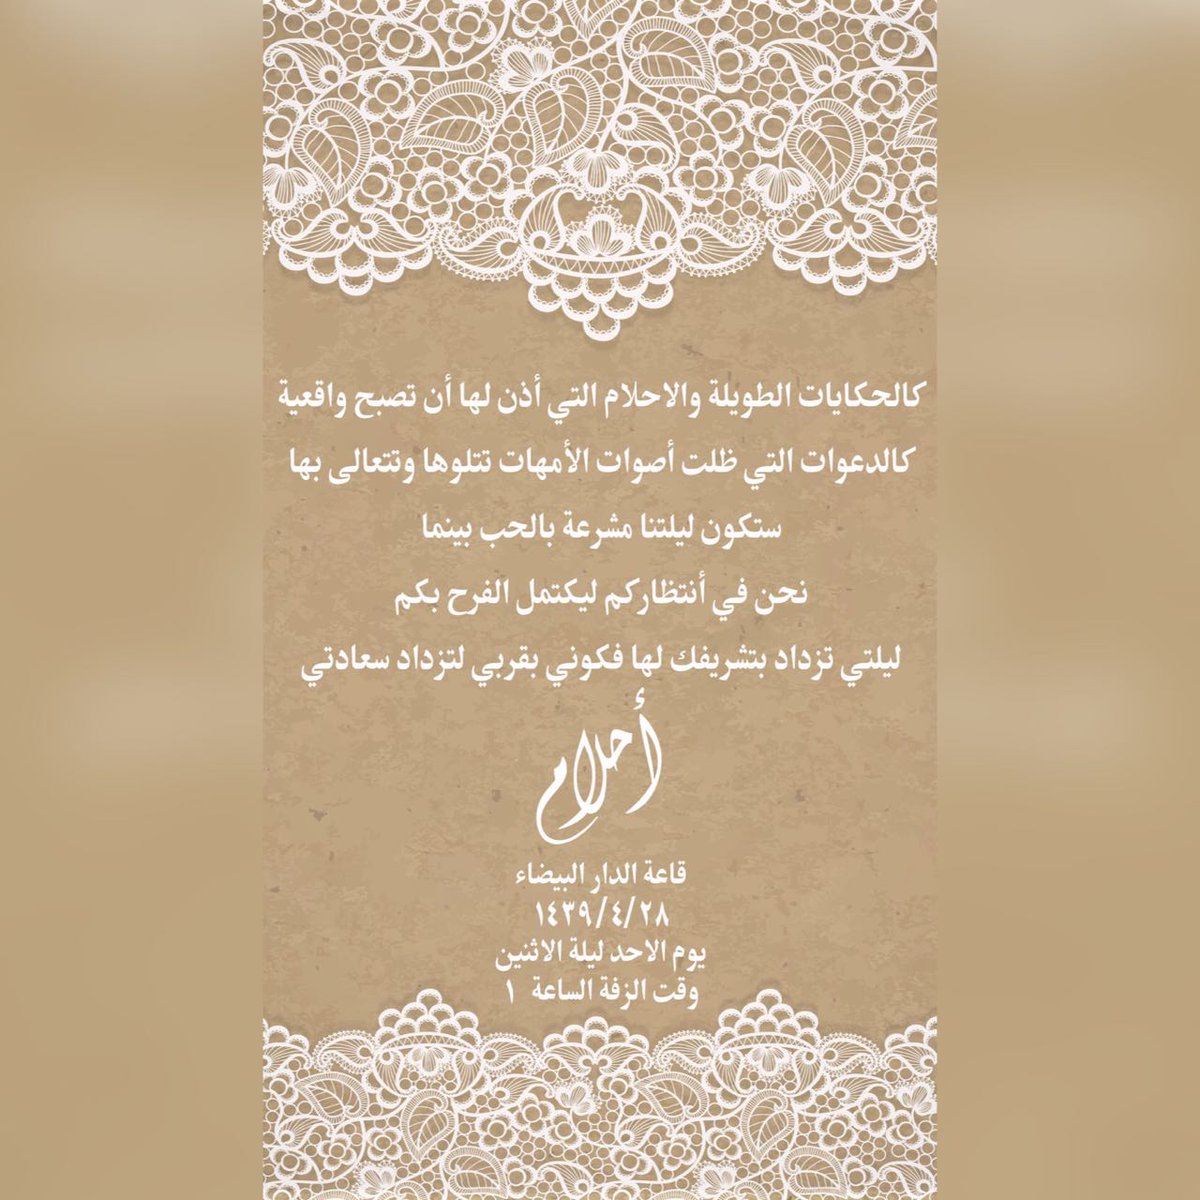 اب بطاقة حسب دعوة رائعة زواج زوج زوقك صمم علي واتس